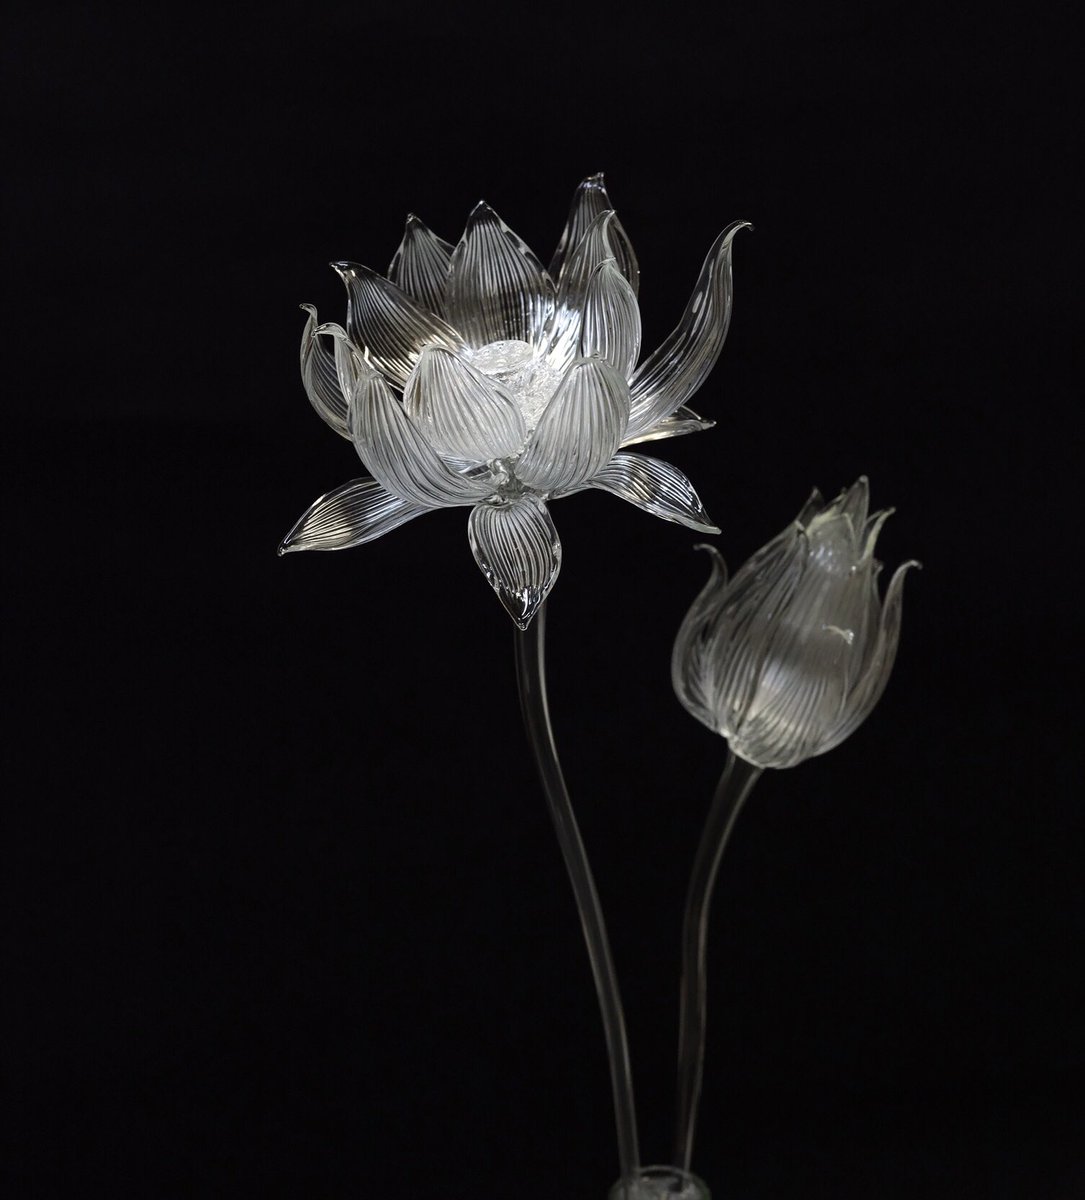 Utsusemi Glass Sculpture 梅雨といえば蓮の花作るよ 静かな佇まいになるように生けて 頭が重いので何度か炎で茎を曲げてようやく安定 夏真っ盛りなので涼やかな感じになり これで蓮の花は終了 蓮のはな ハス ランプワーク Borosilicate